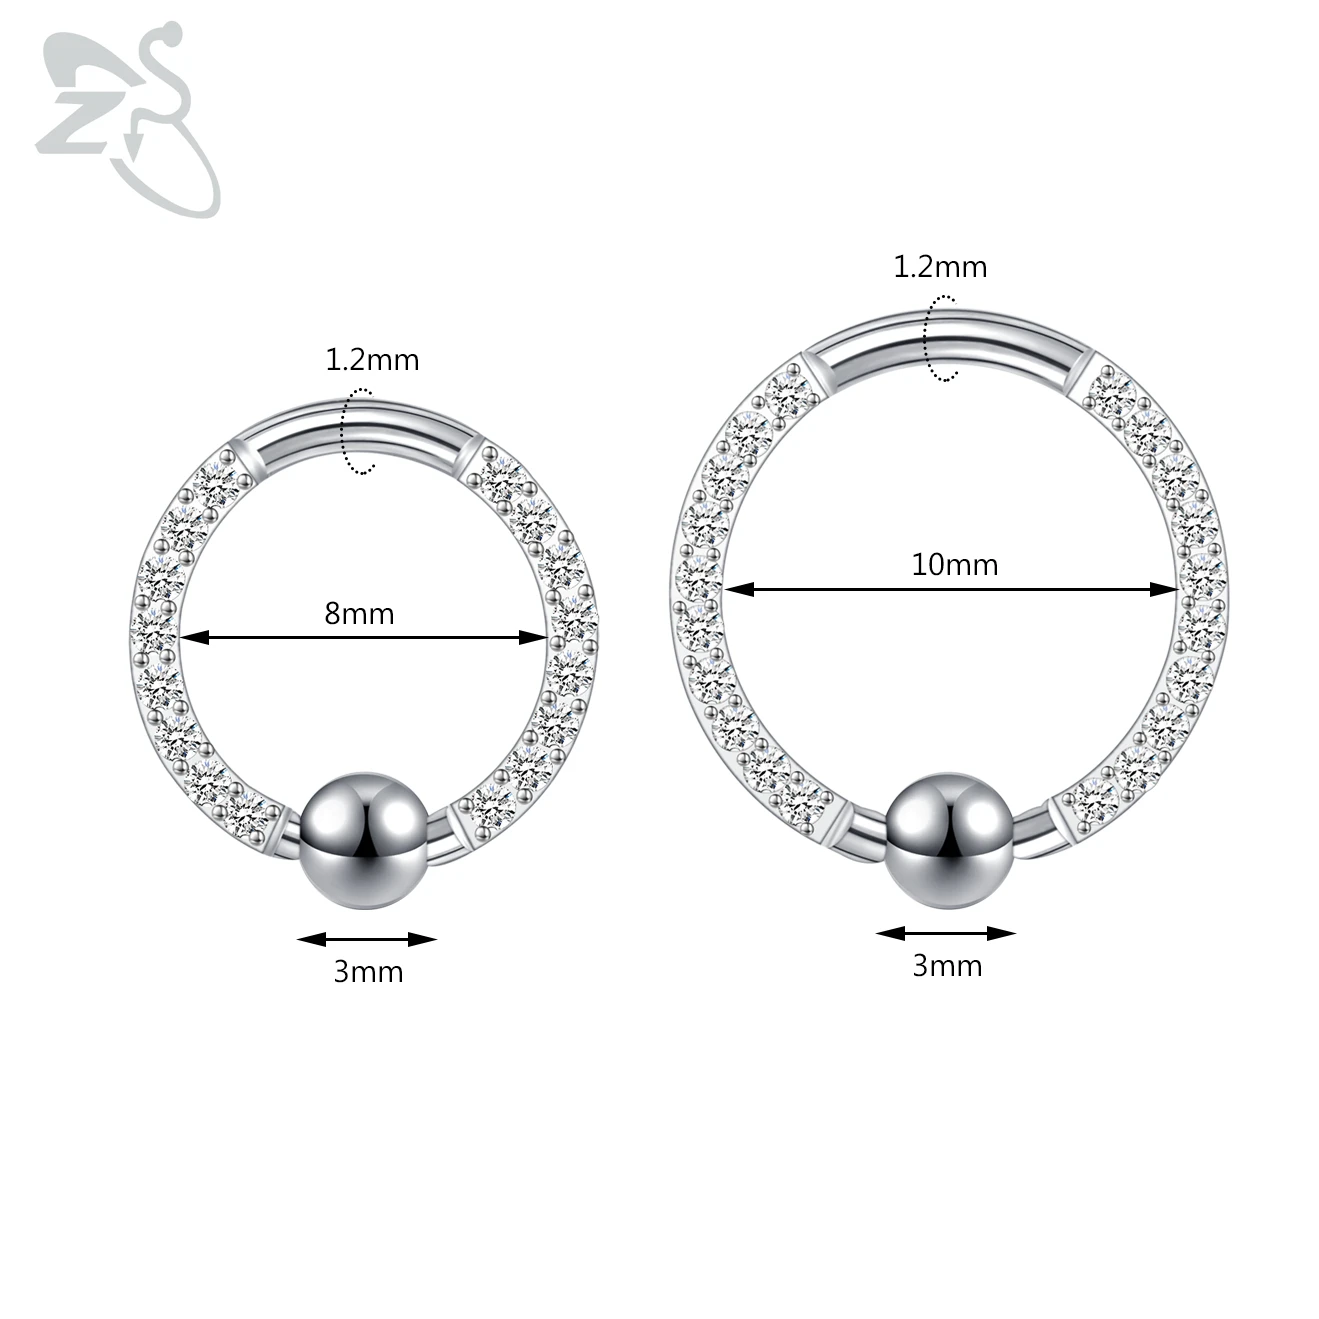 ZS 1 pièce anneau de nez en cristal CZ 8/10MM en acier inoxydable Septum Clicker oreille noire Helix Cartilage Tragus Piercing bijoux 16g